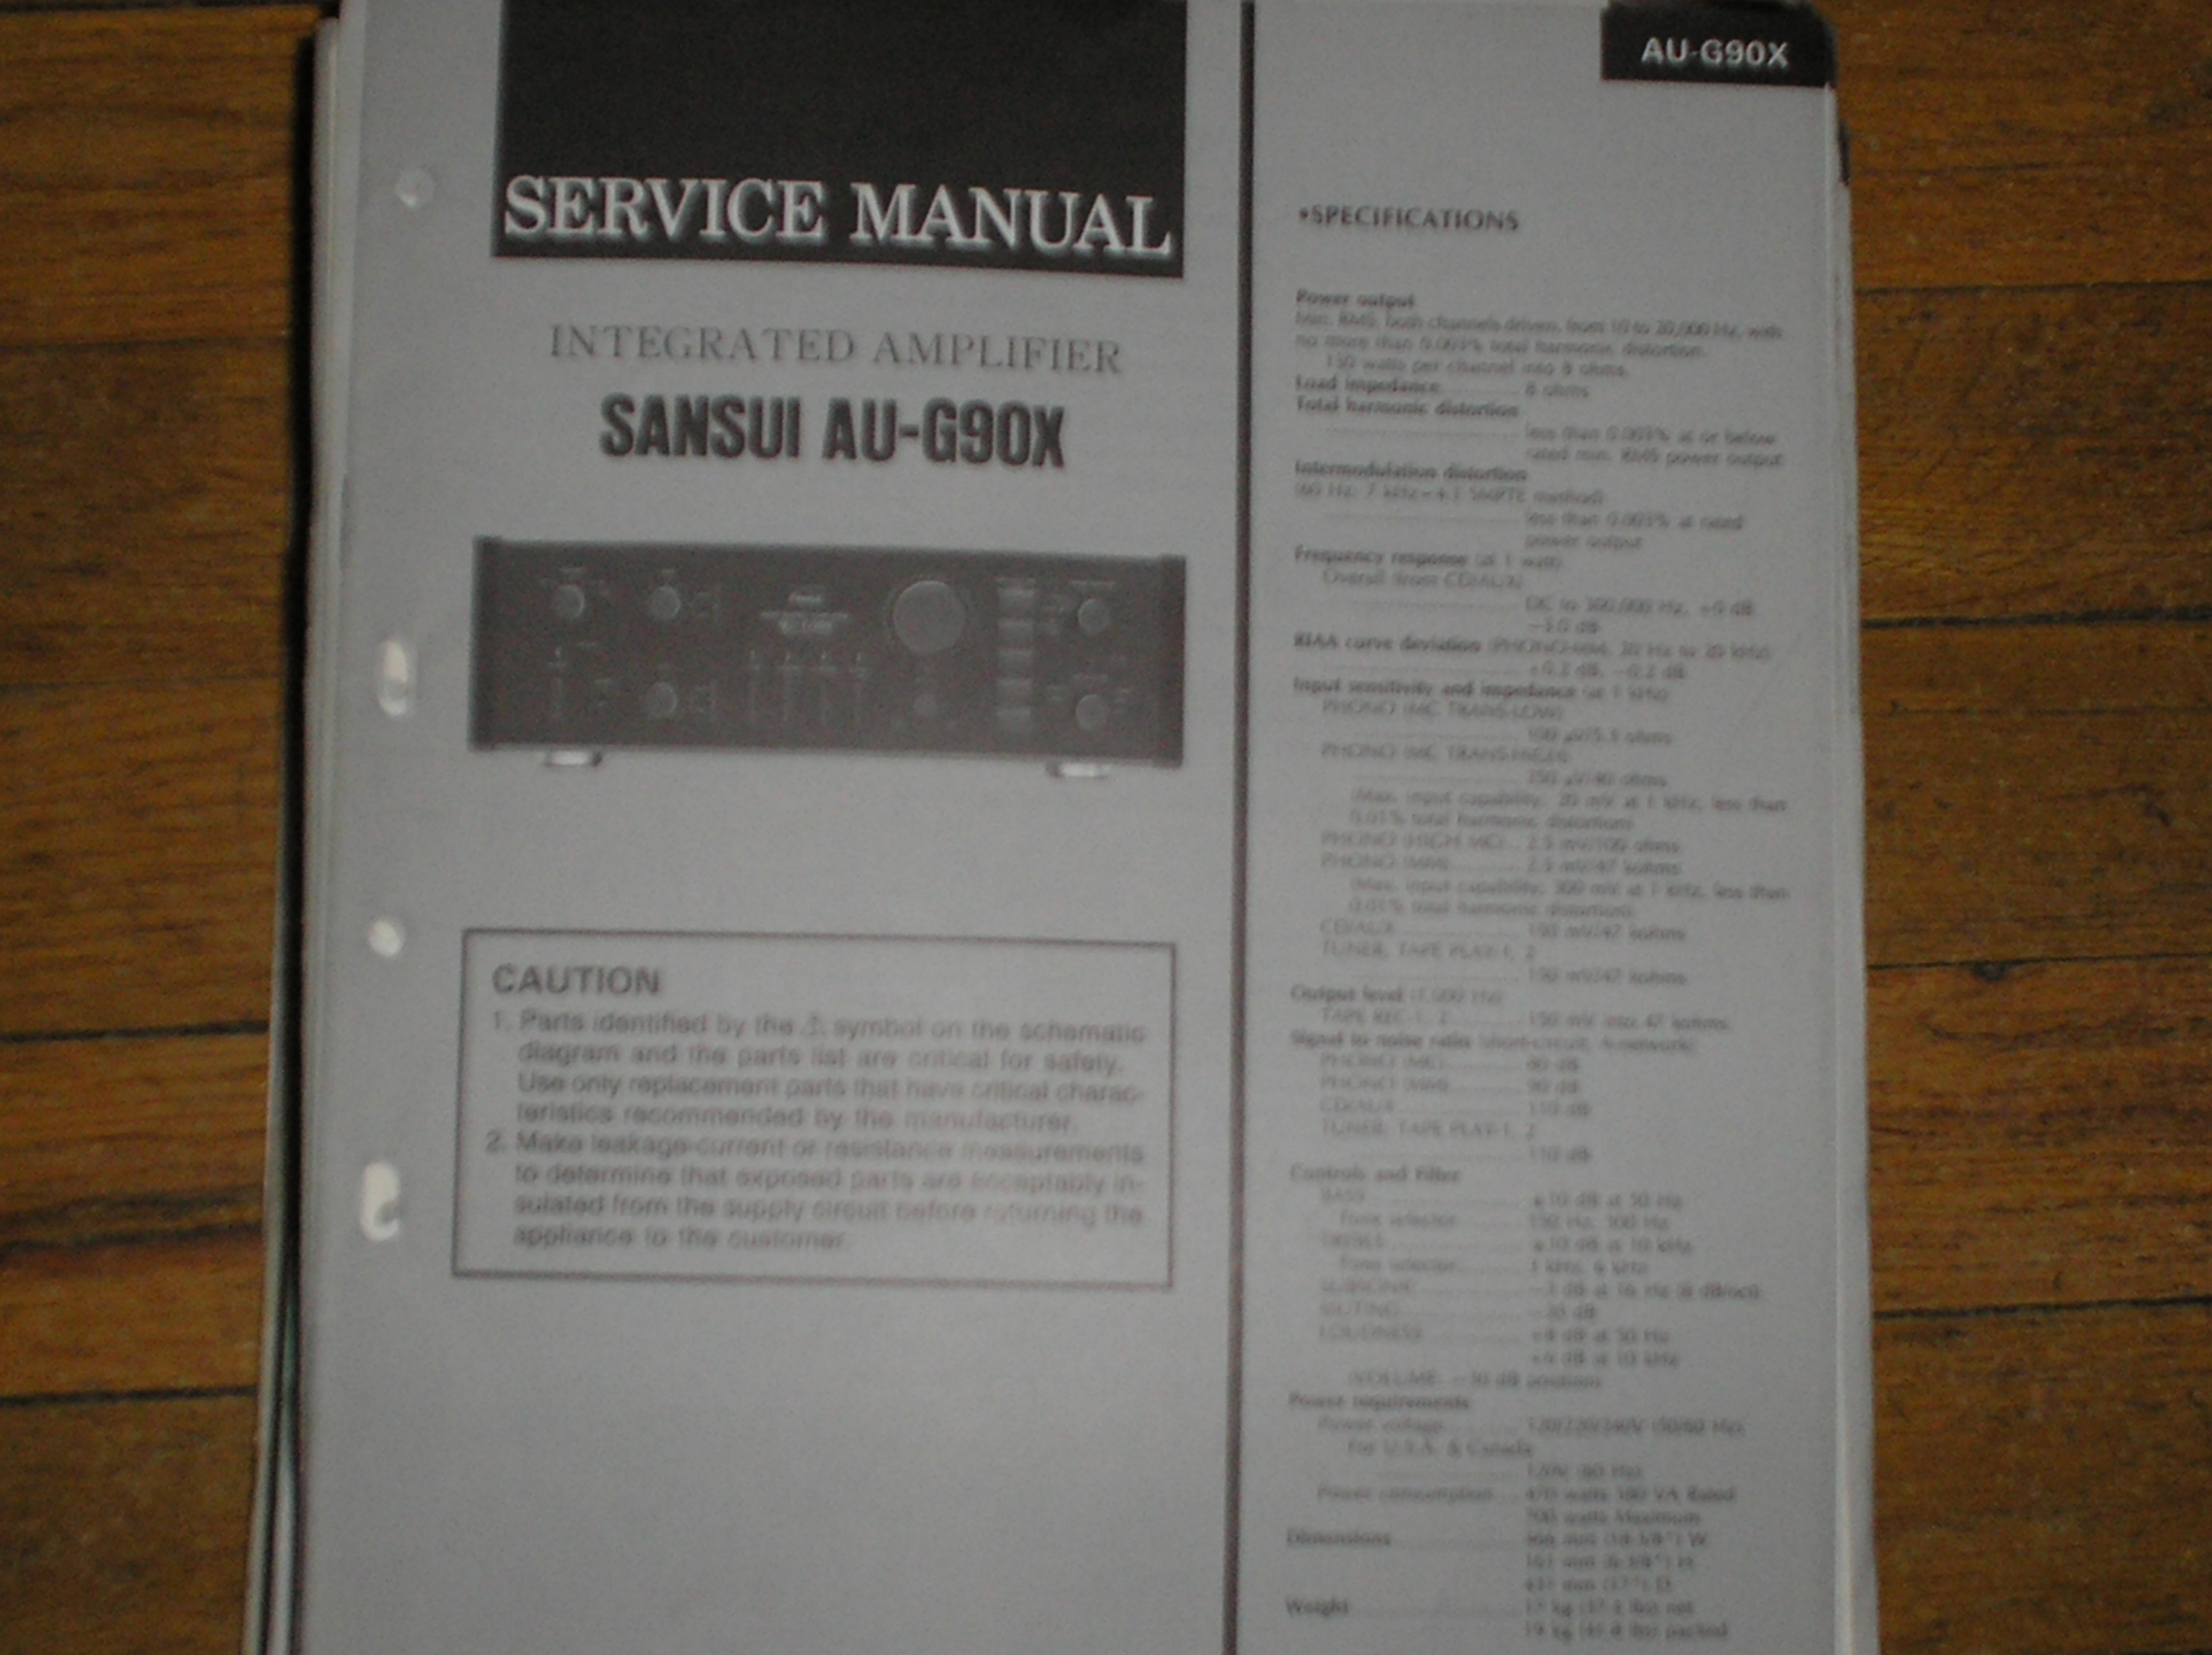 AU-G90X Amplifier Service Manual